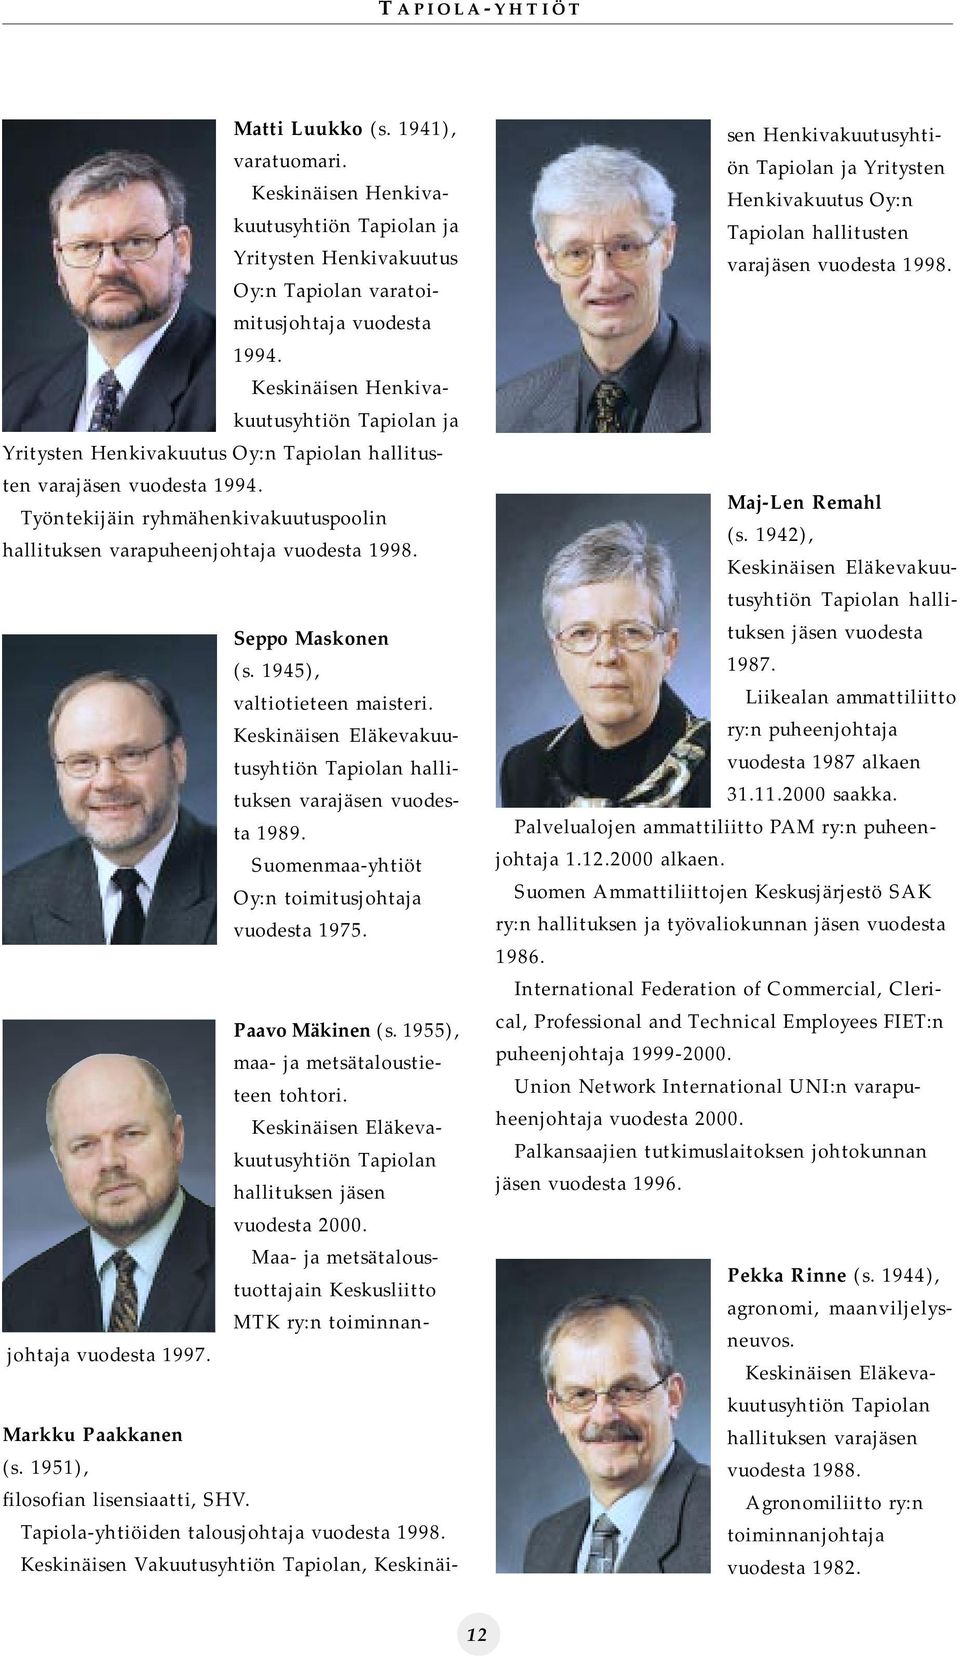 Työntekijäin ryhmähenkivakuutuspoolin hallituksen varapuheenjohtaja vuodesta 1998. Seppo Maskonen (s. 1945), valtiotieteen maisteri.